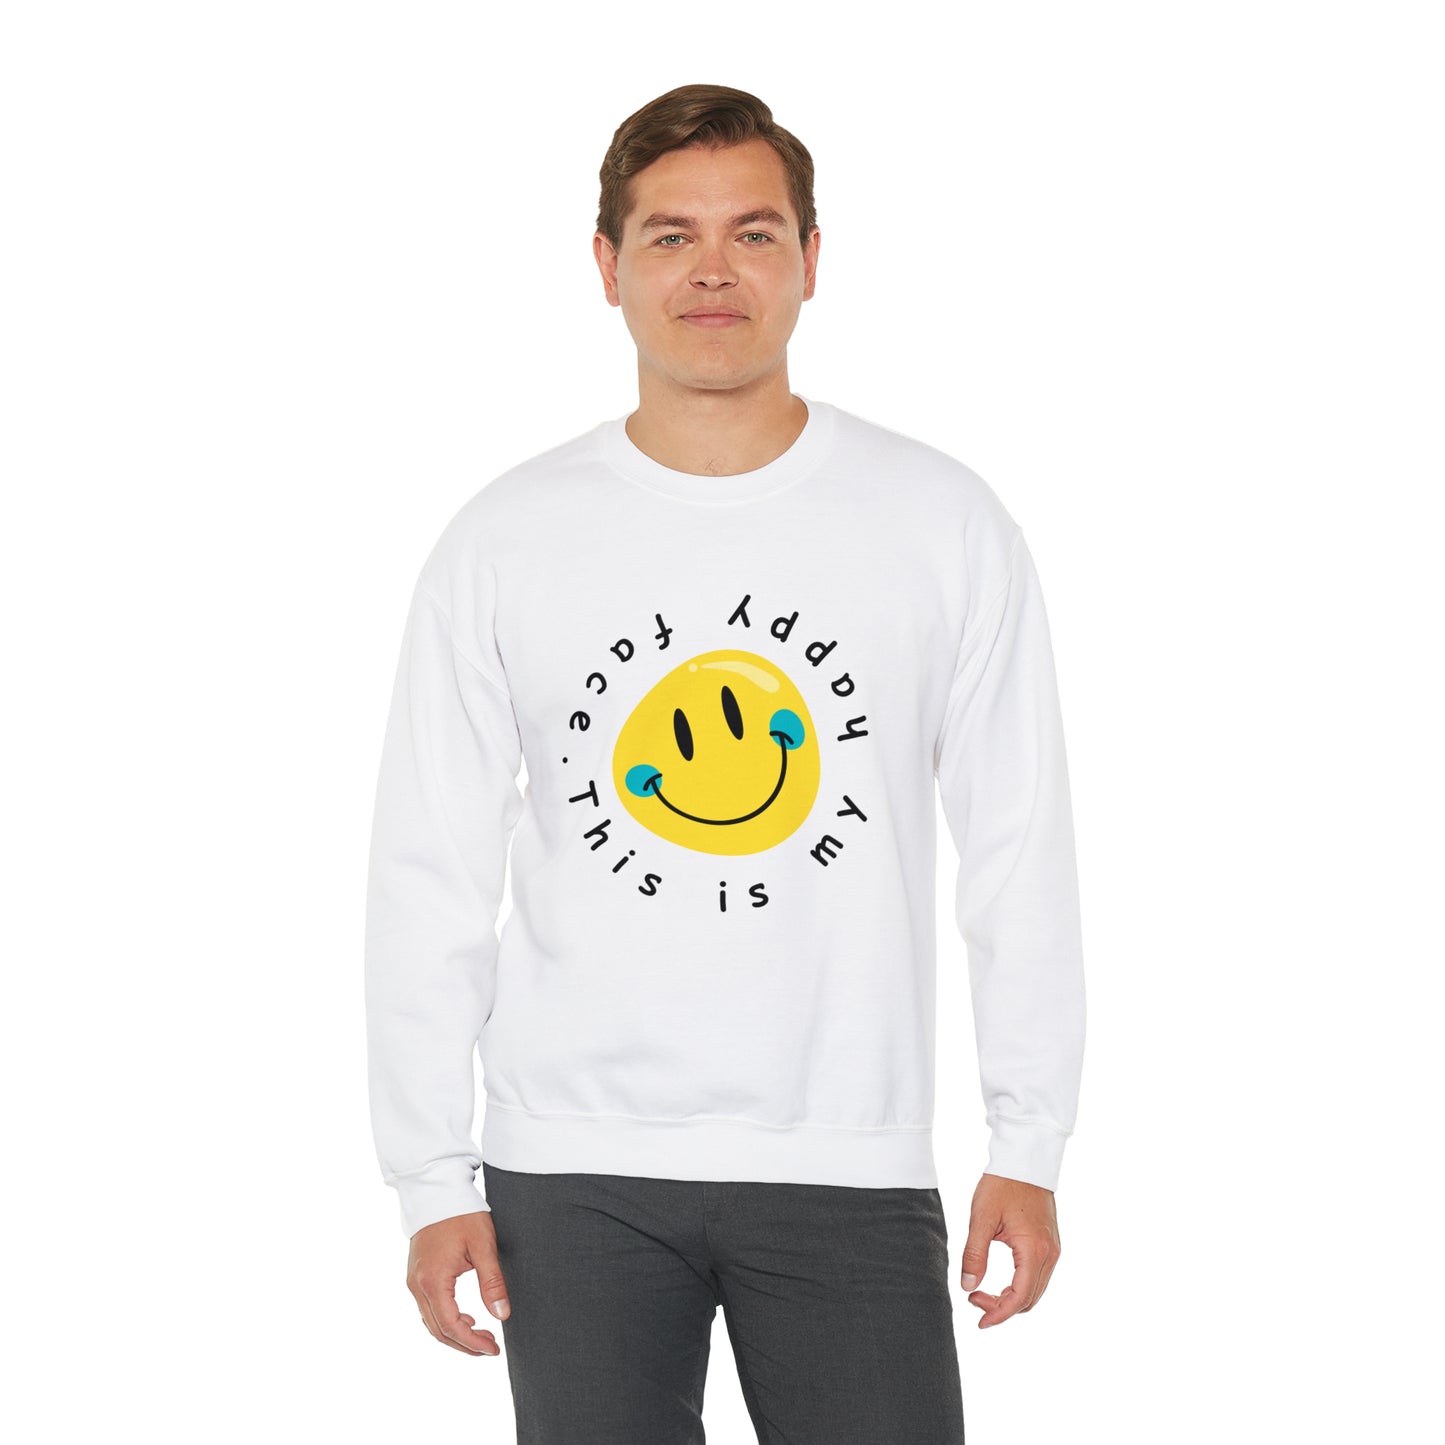 Unisex Happy Face Emoji Crewneck Sweatshirt